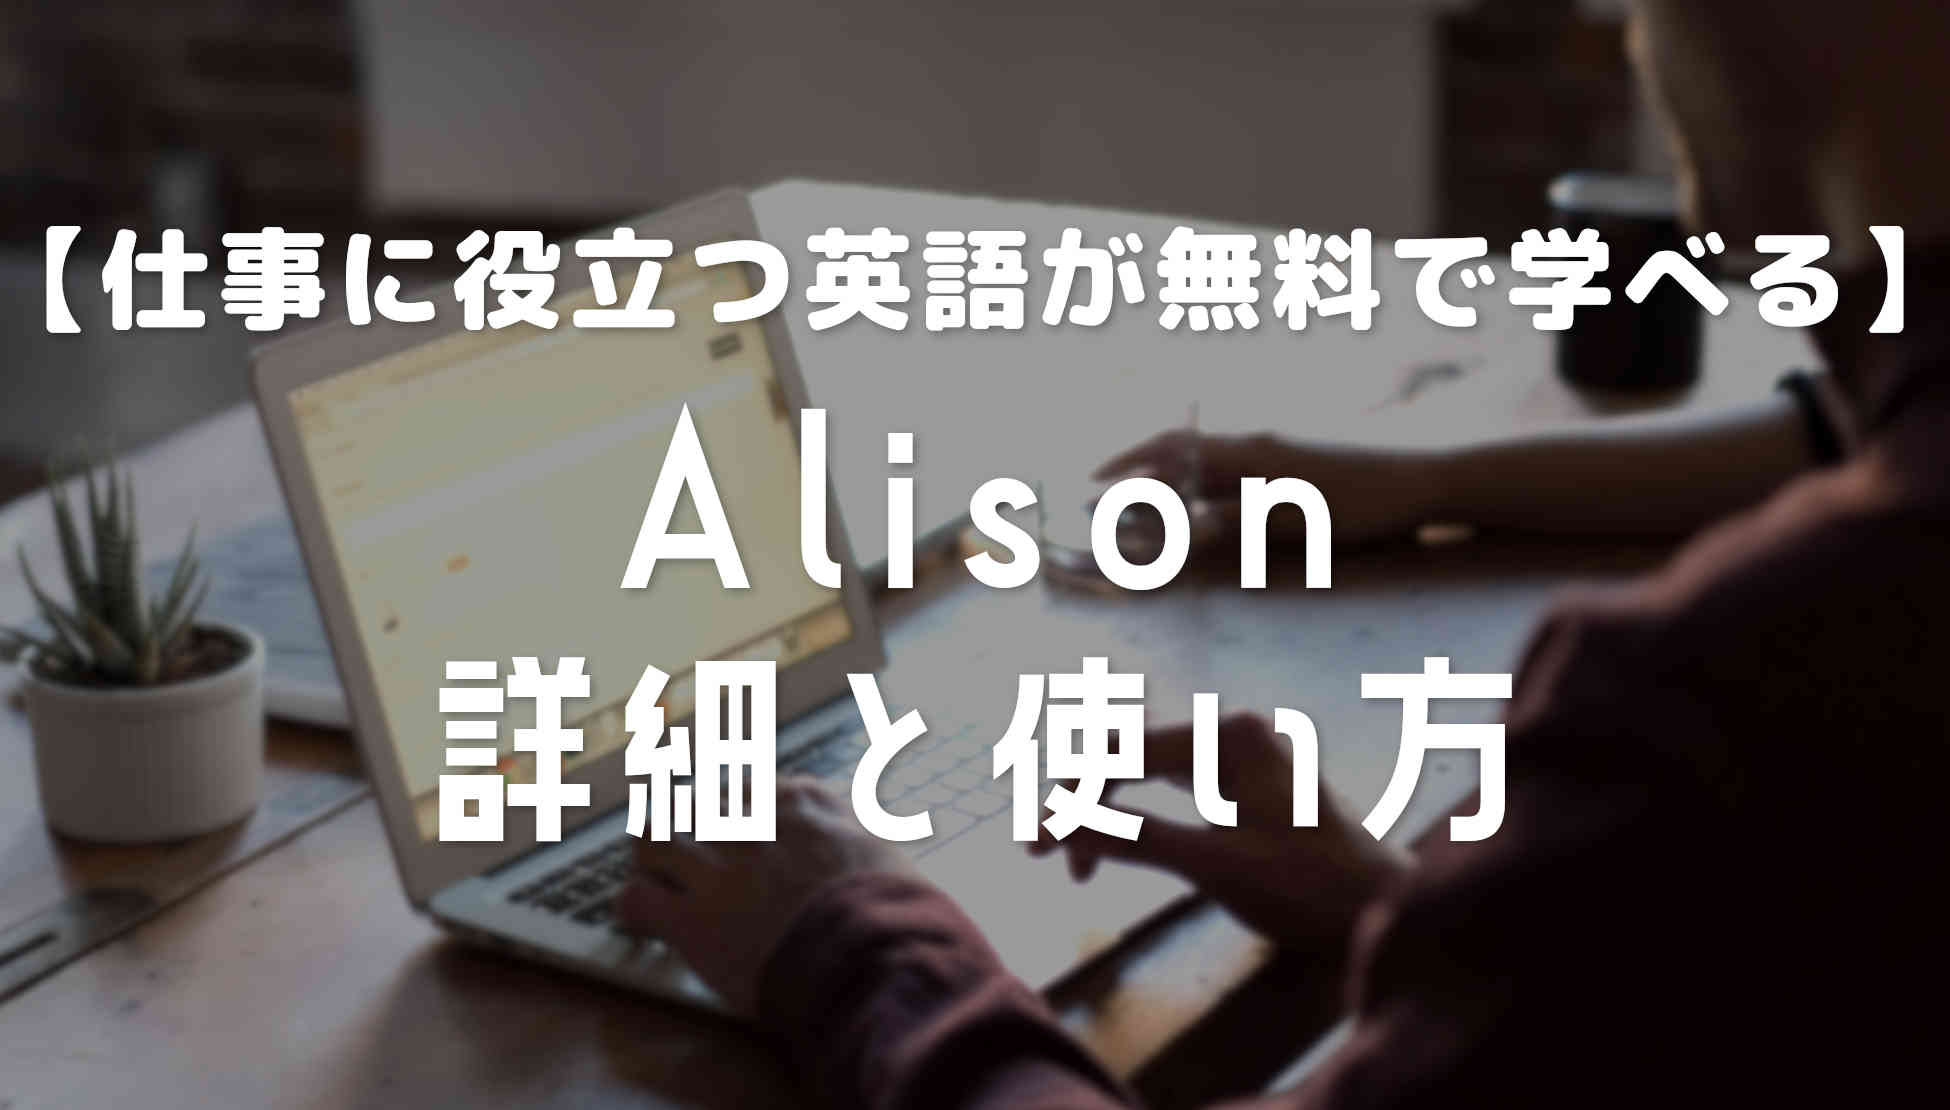 無料で英語でスキルを学べるAlisonの詳細とおすすめの講座【MOOCS】